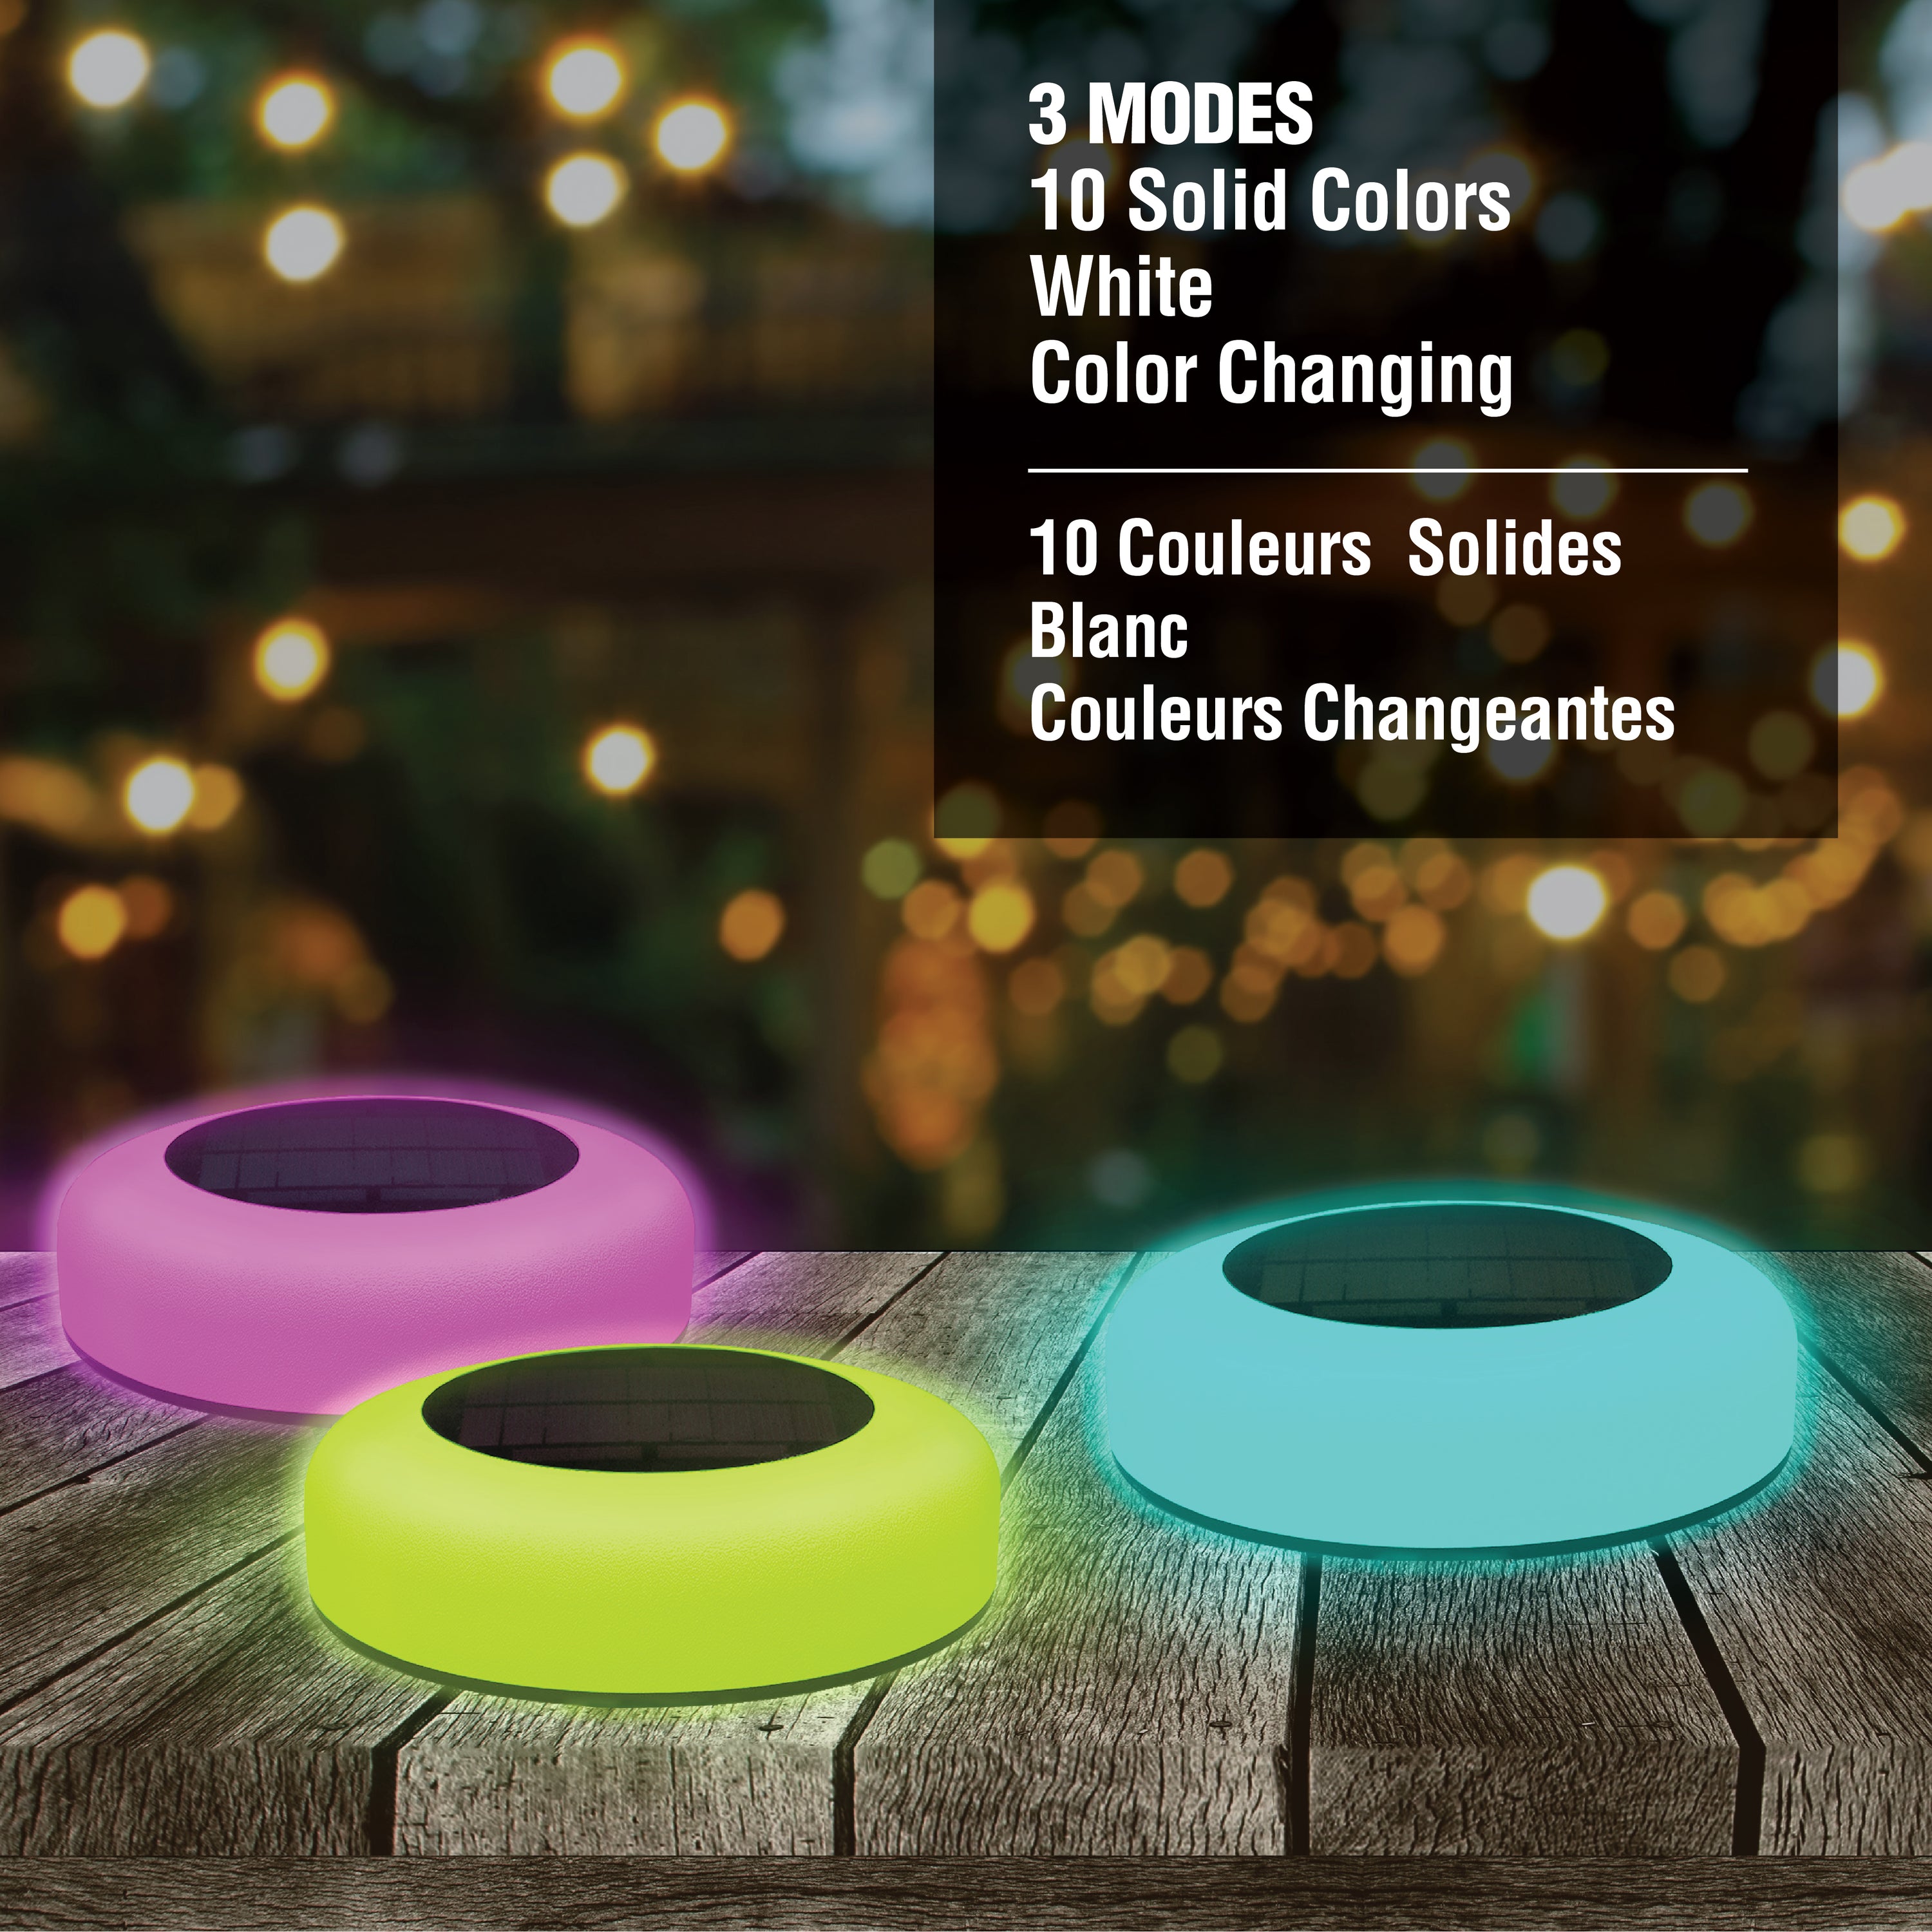 Bell + Howell Pathway & Landscape Color Disk - Color Changing Disk Lights - 4 Pack